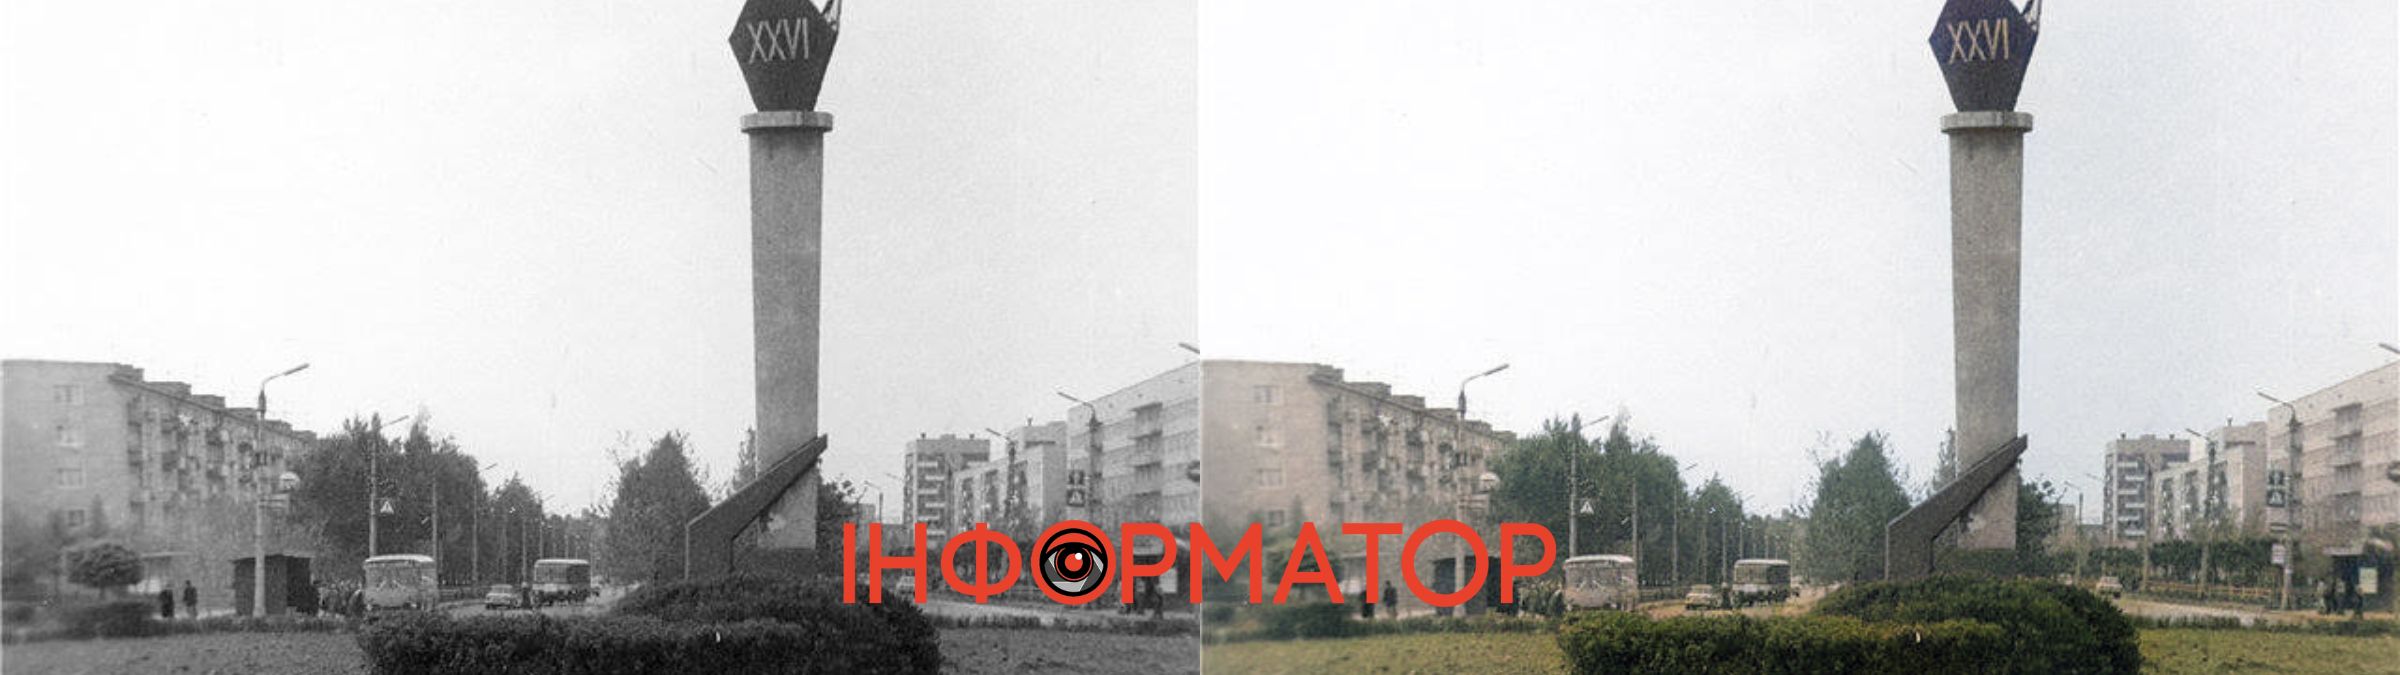 Історія Калуша в кольорі: чорно-білі знімки міста у яскравому забарвленні | №9